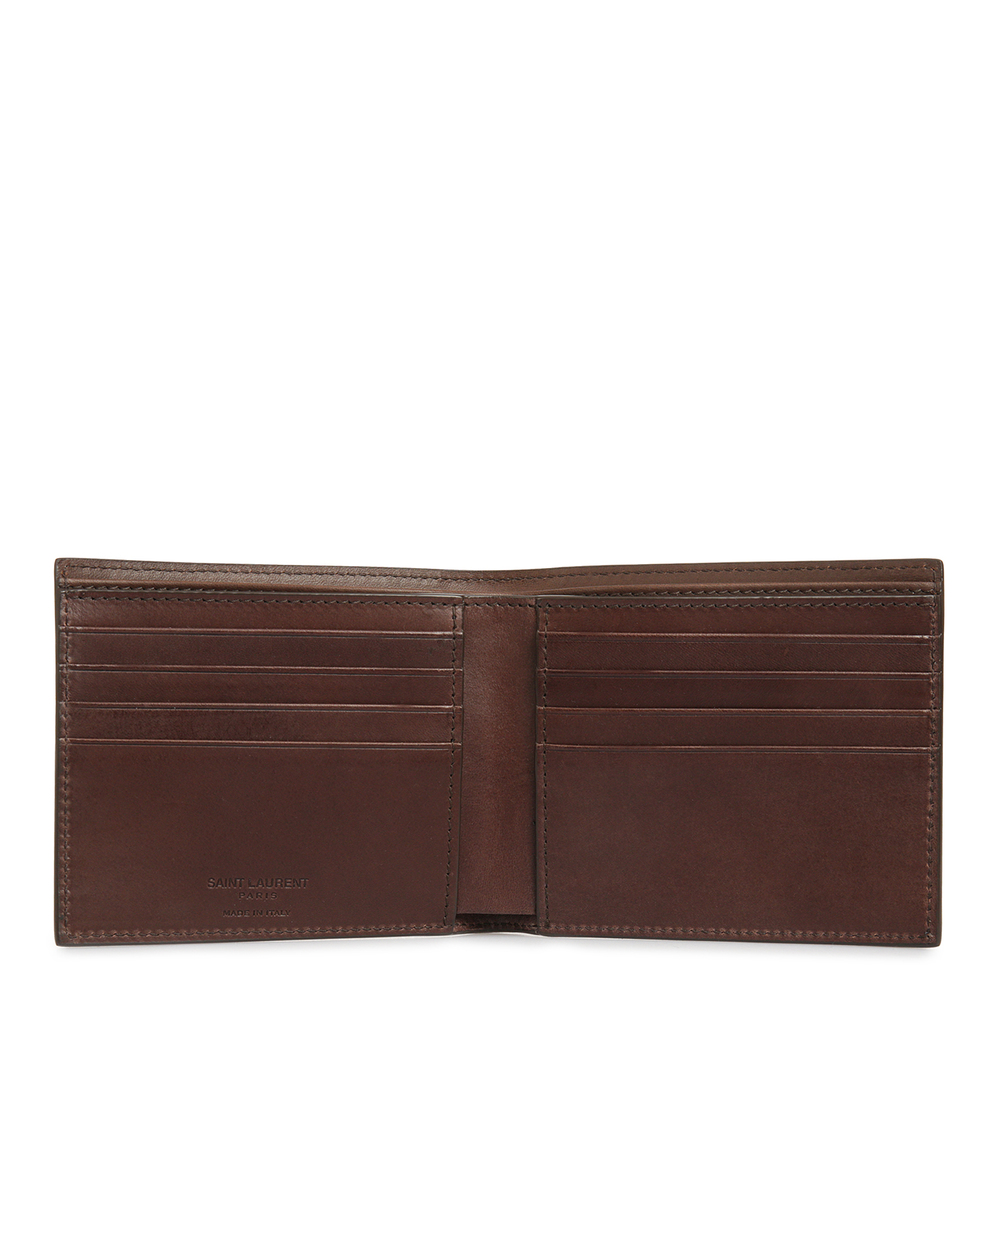 Кожаный кошелек Eats/West Saint Laurent 396307-0TZ0W, коричневый цвет • Купить в интернет-магазине Kameron